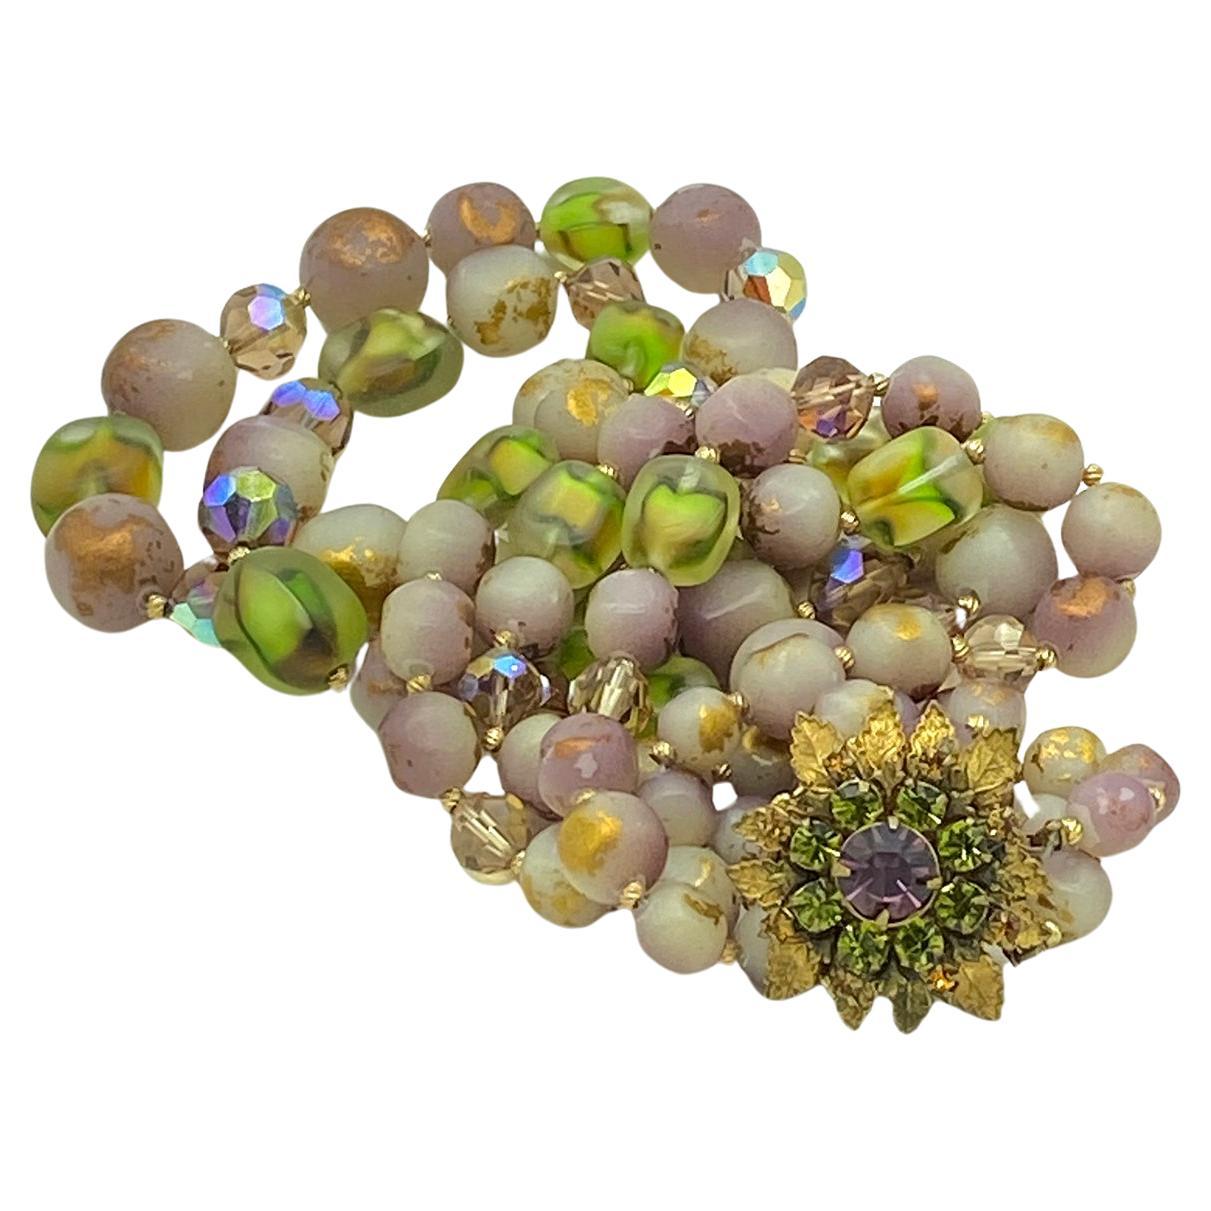 Dies ist ein Miriam Haskell Doppel-Strang Halskette und Clip-Ohrringe gesetzt. Sie sind violett, grün, gold, alle Farben des Marde Gras. Dieses handgefertigte Set ist mit einer strassbesetzten Schließe mit vergoldeten Metallblättern versehen und auf